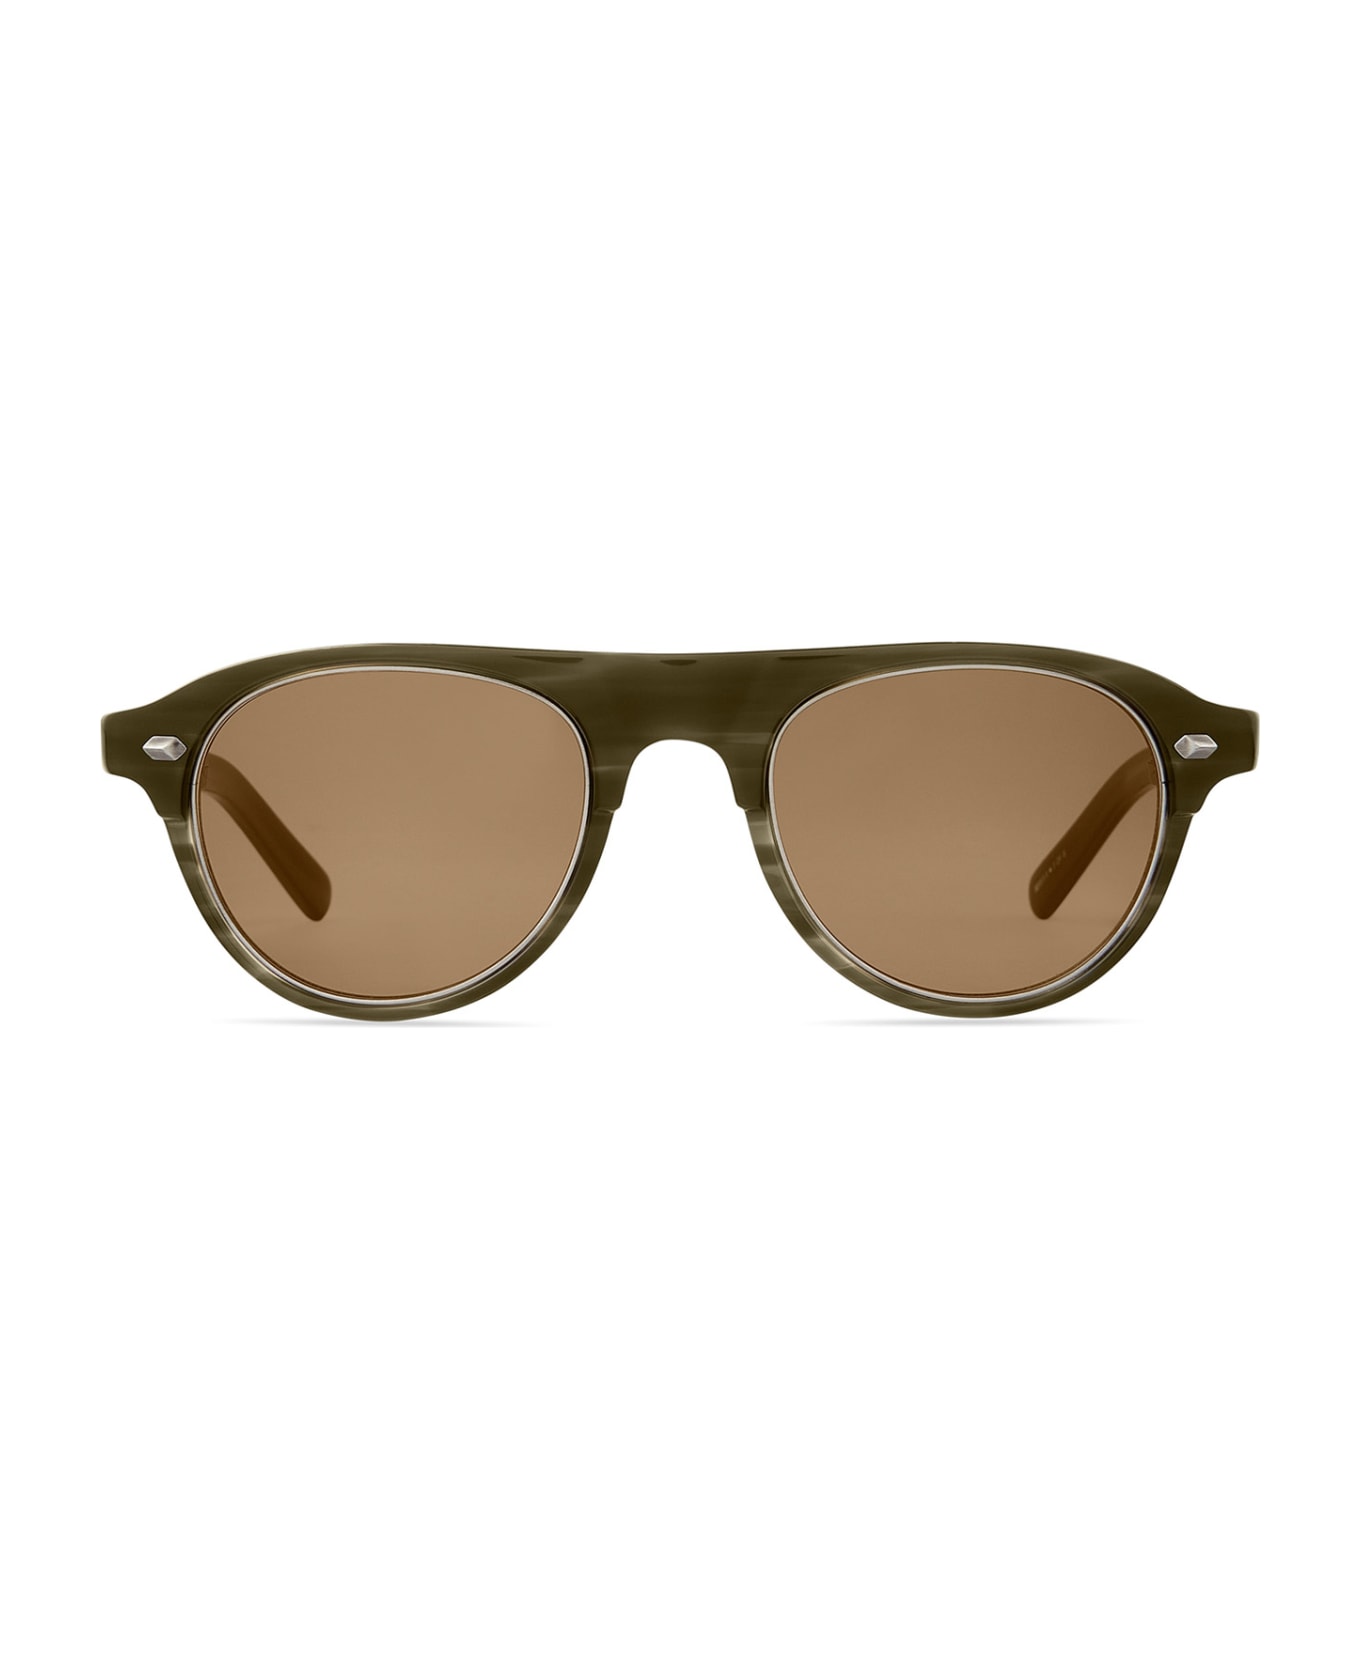 Mr. Leight Stahl S Kelp-pewter/molasses Sunglasses - Kelp-Pewter/Molasses サングラス